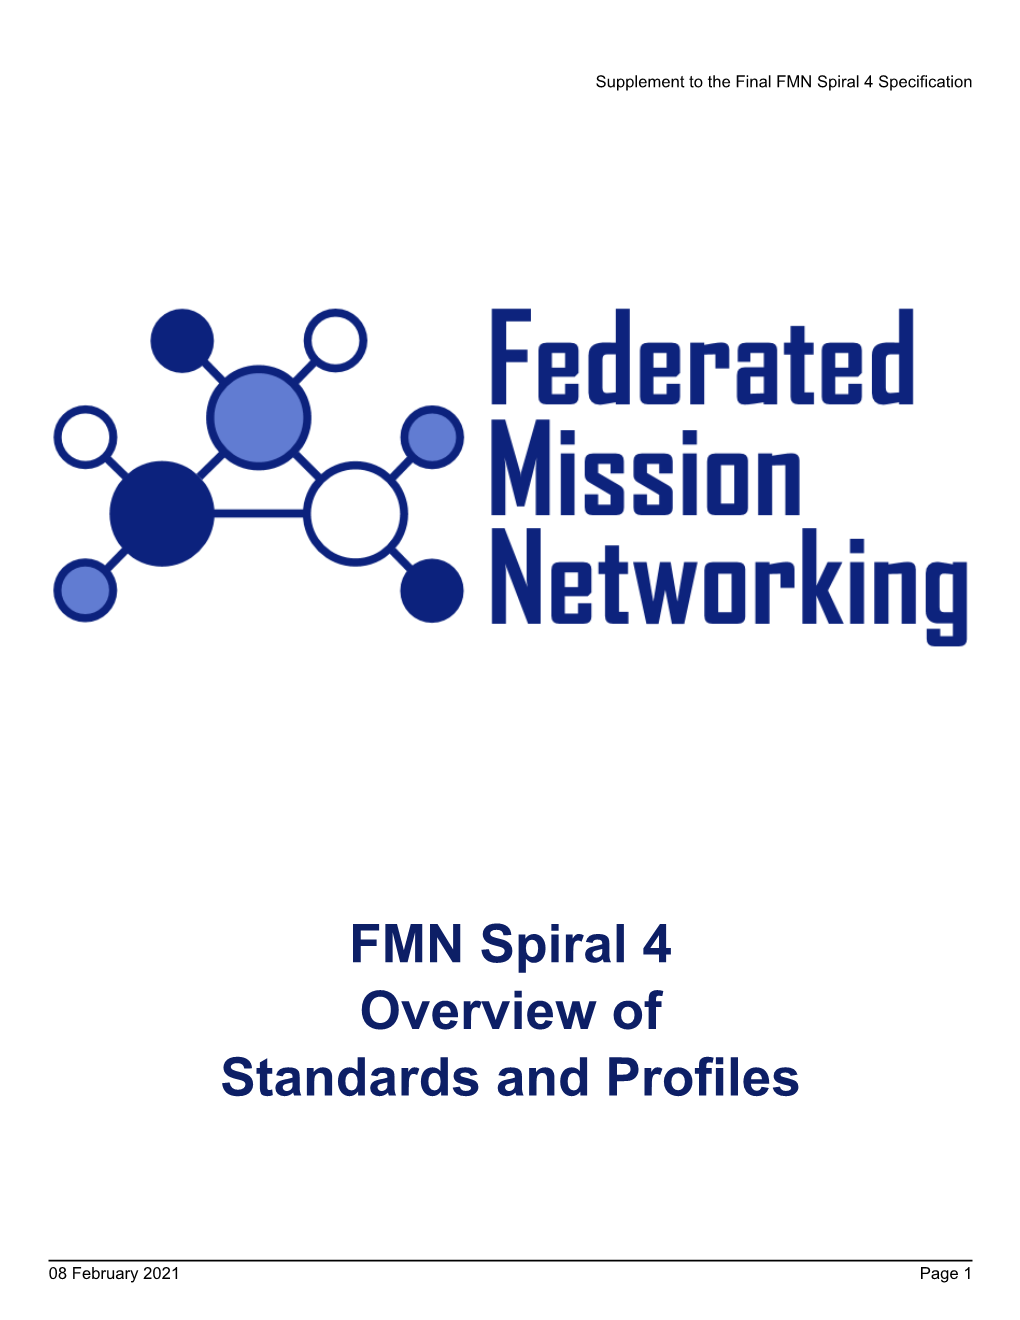 FMN Spiral 4 Standards Profile Disclaimer